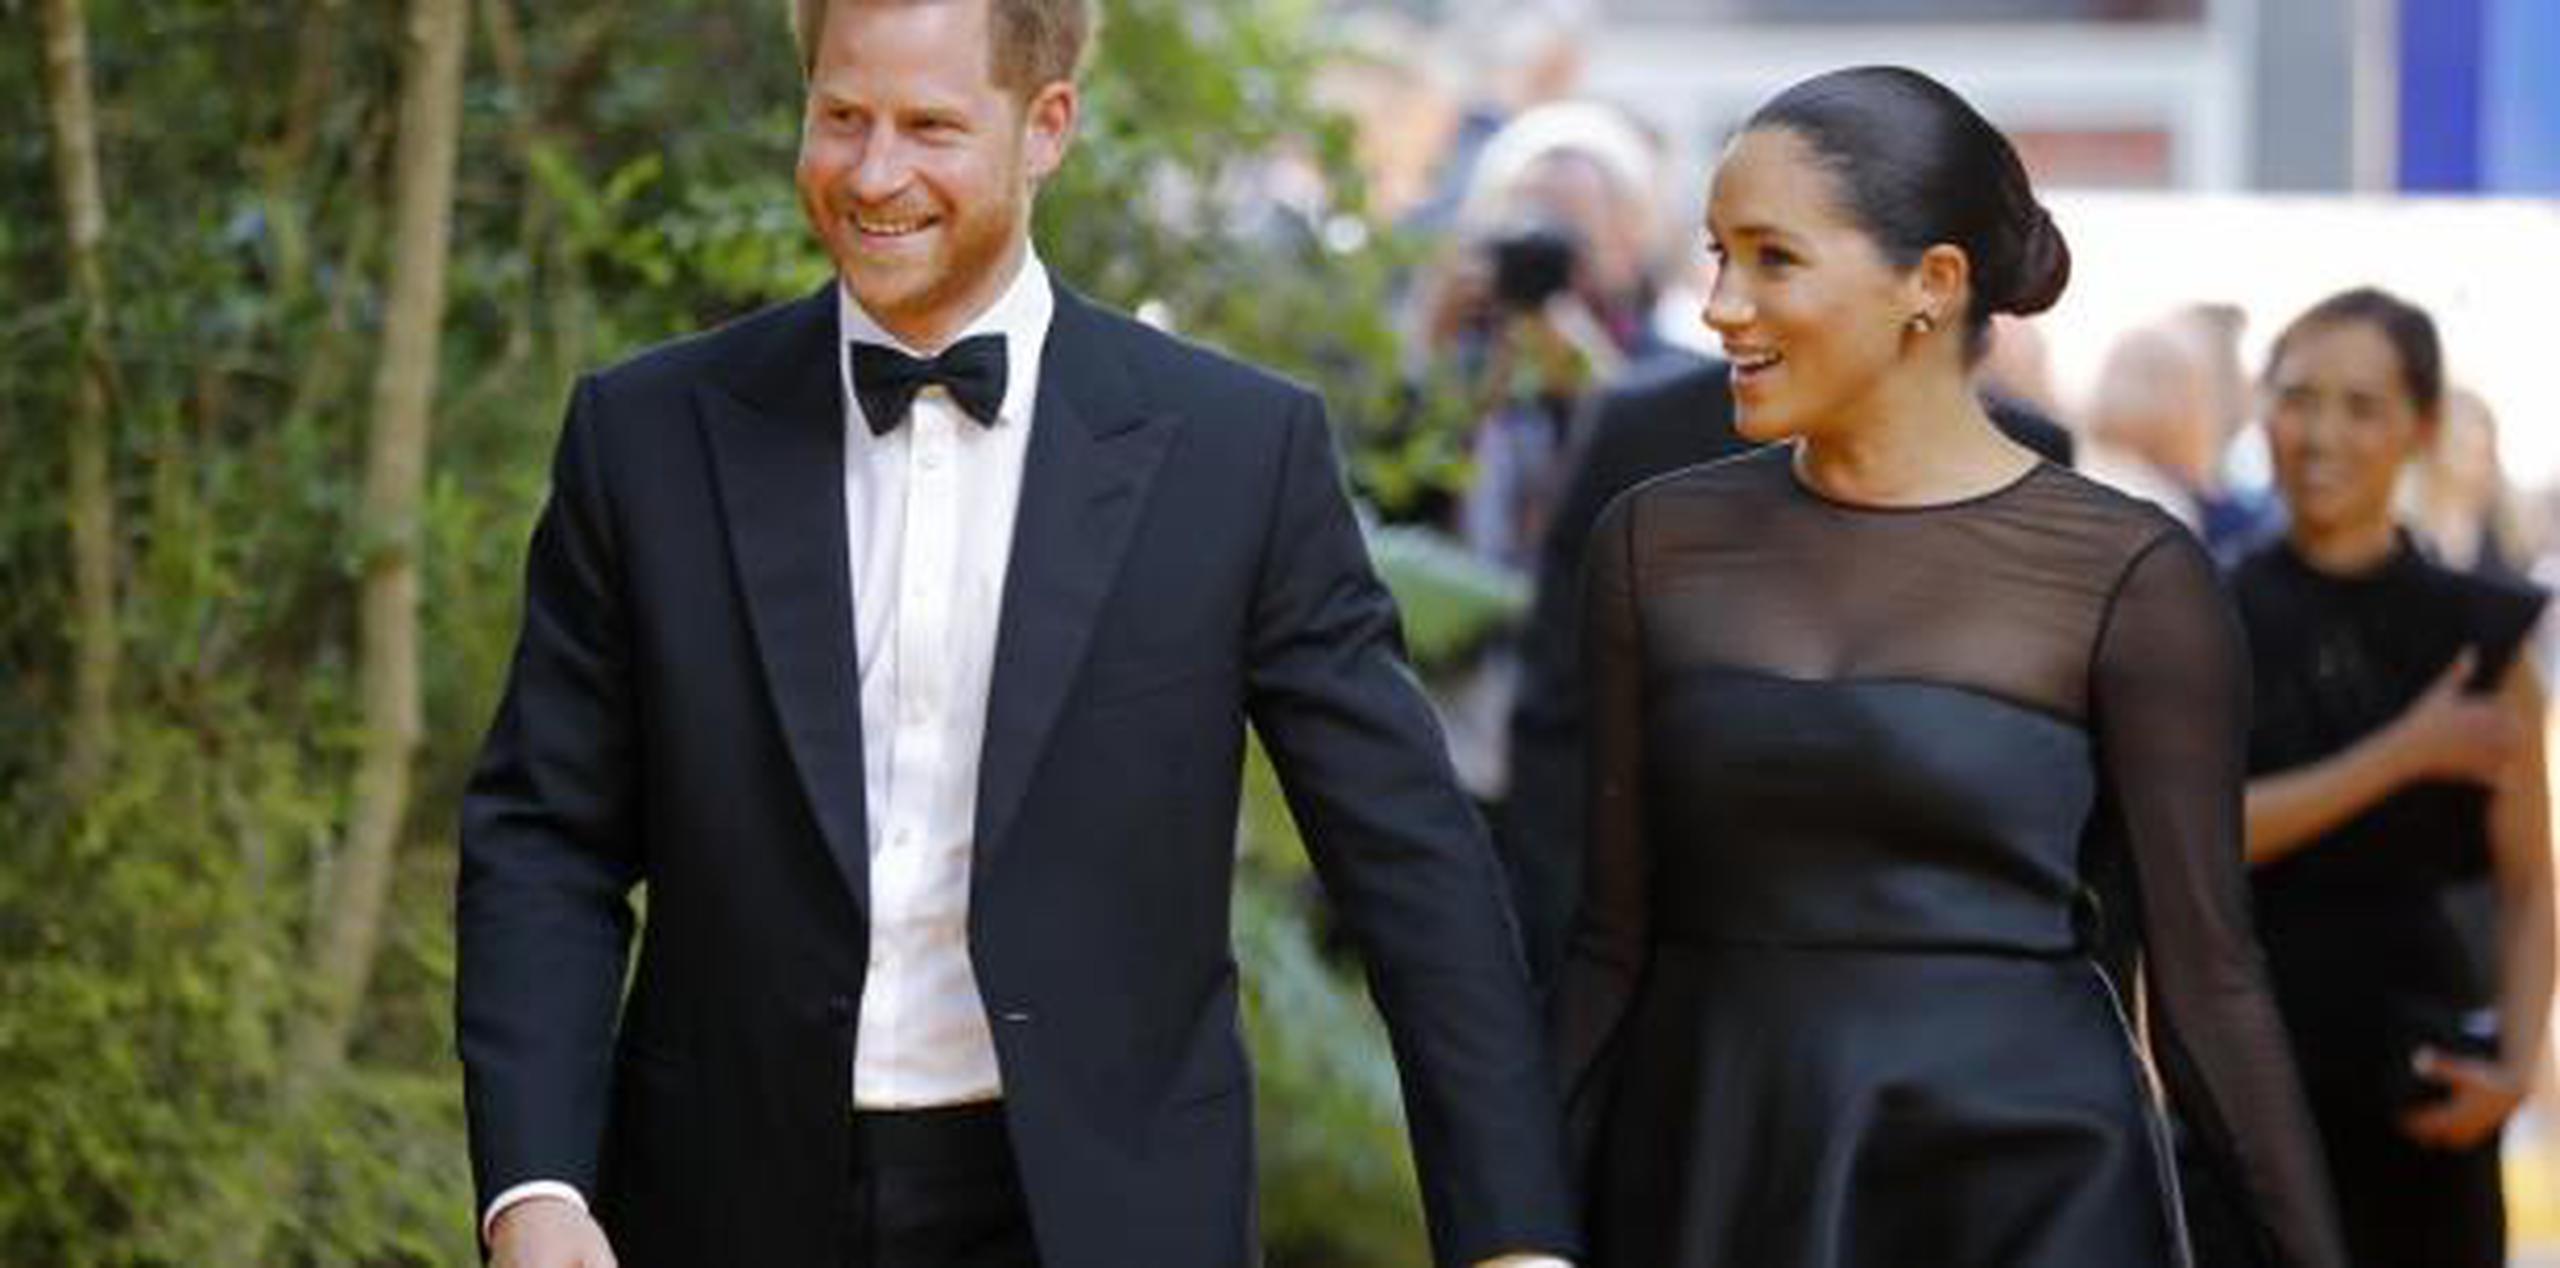 La duquesa de Sussex lució un vestido negro con detalles de transparencias. (AP)